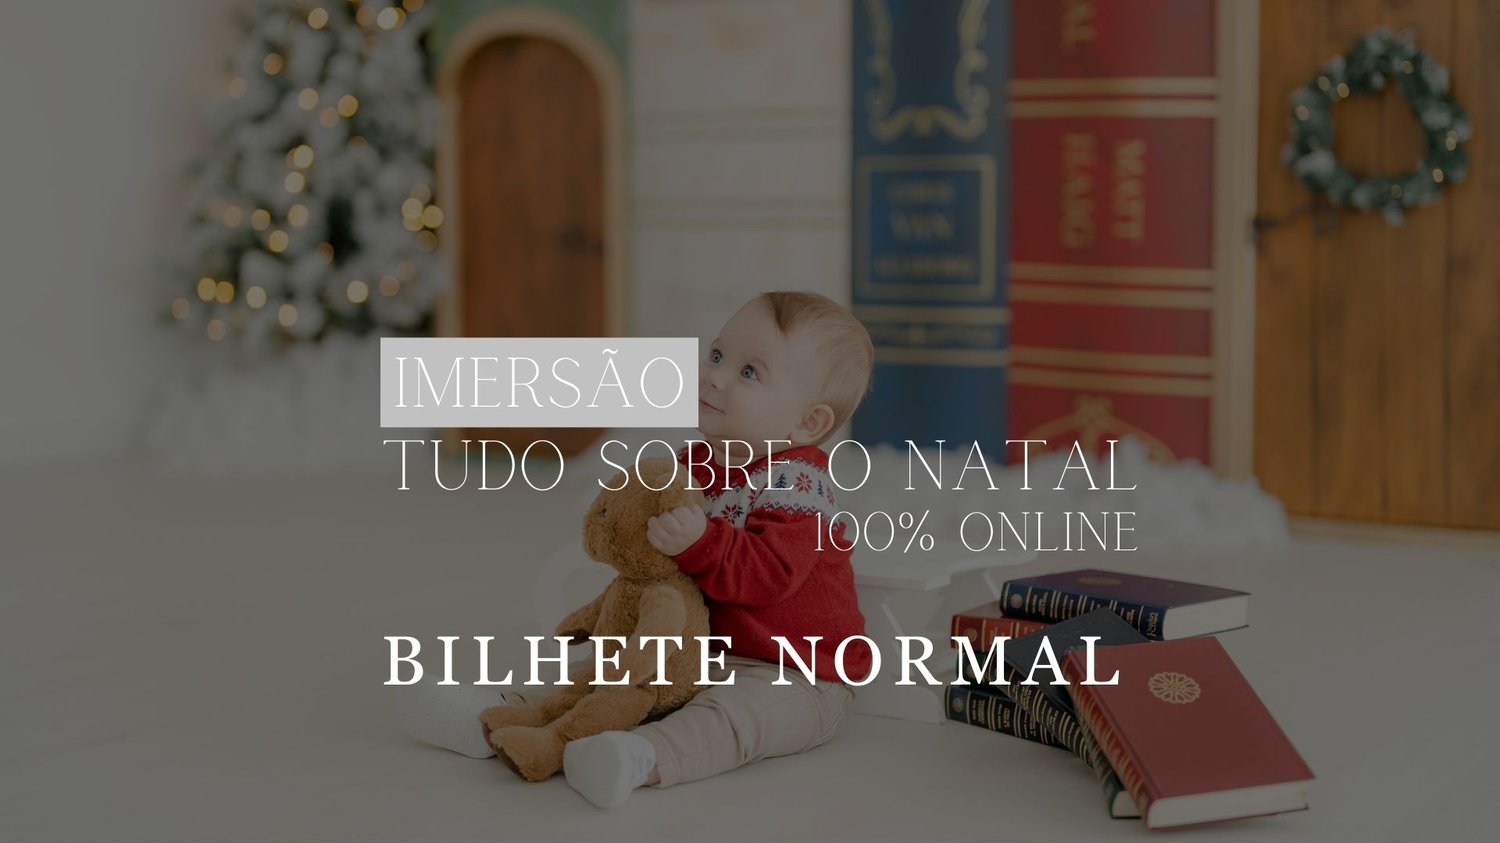 Image of Imersão - Tudo sobre o NATAL - Bilhete Normal